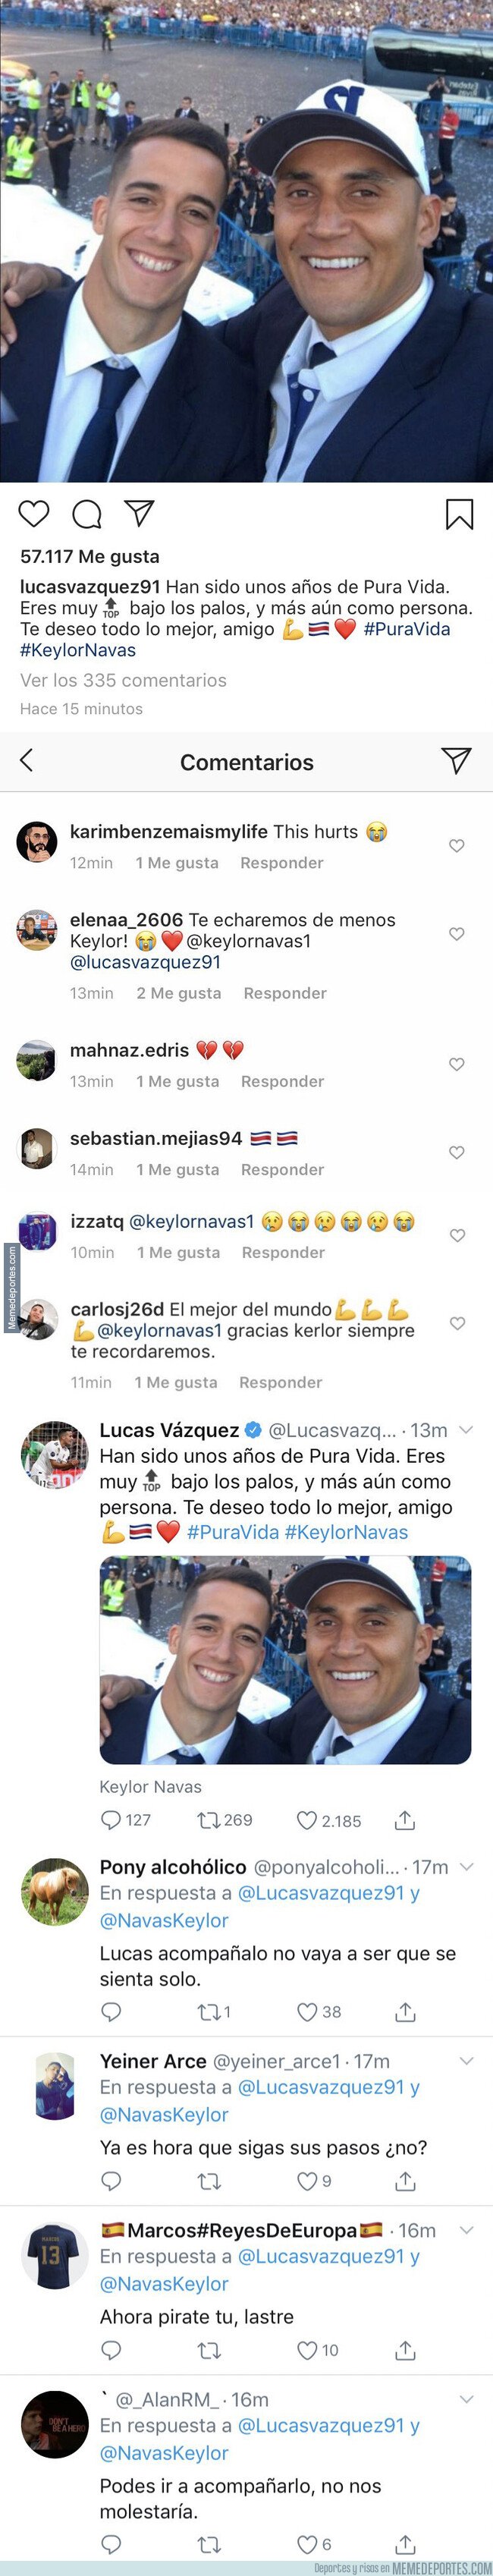 1085668 - Te meas de la risa: Esta es la gran diferencia de comentarios que recibió Lucas Vázquez en Twitter e Instagram al despedirse de Keylor Navas